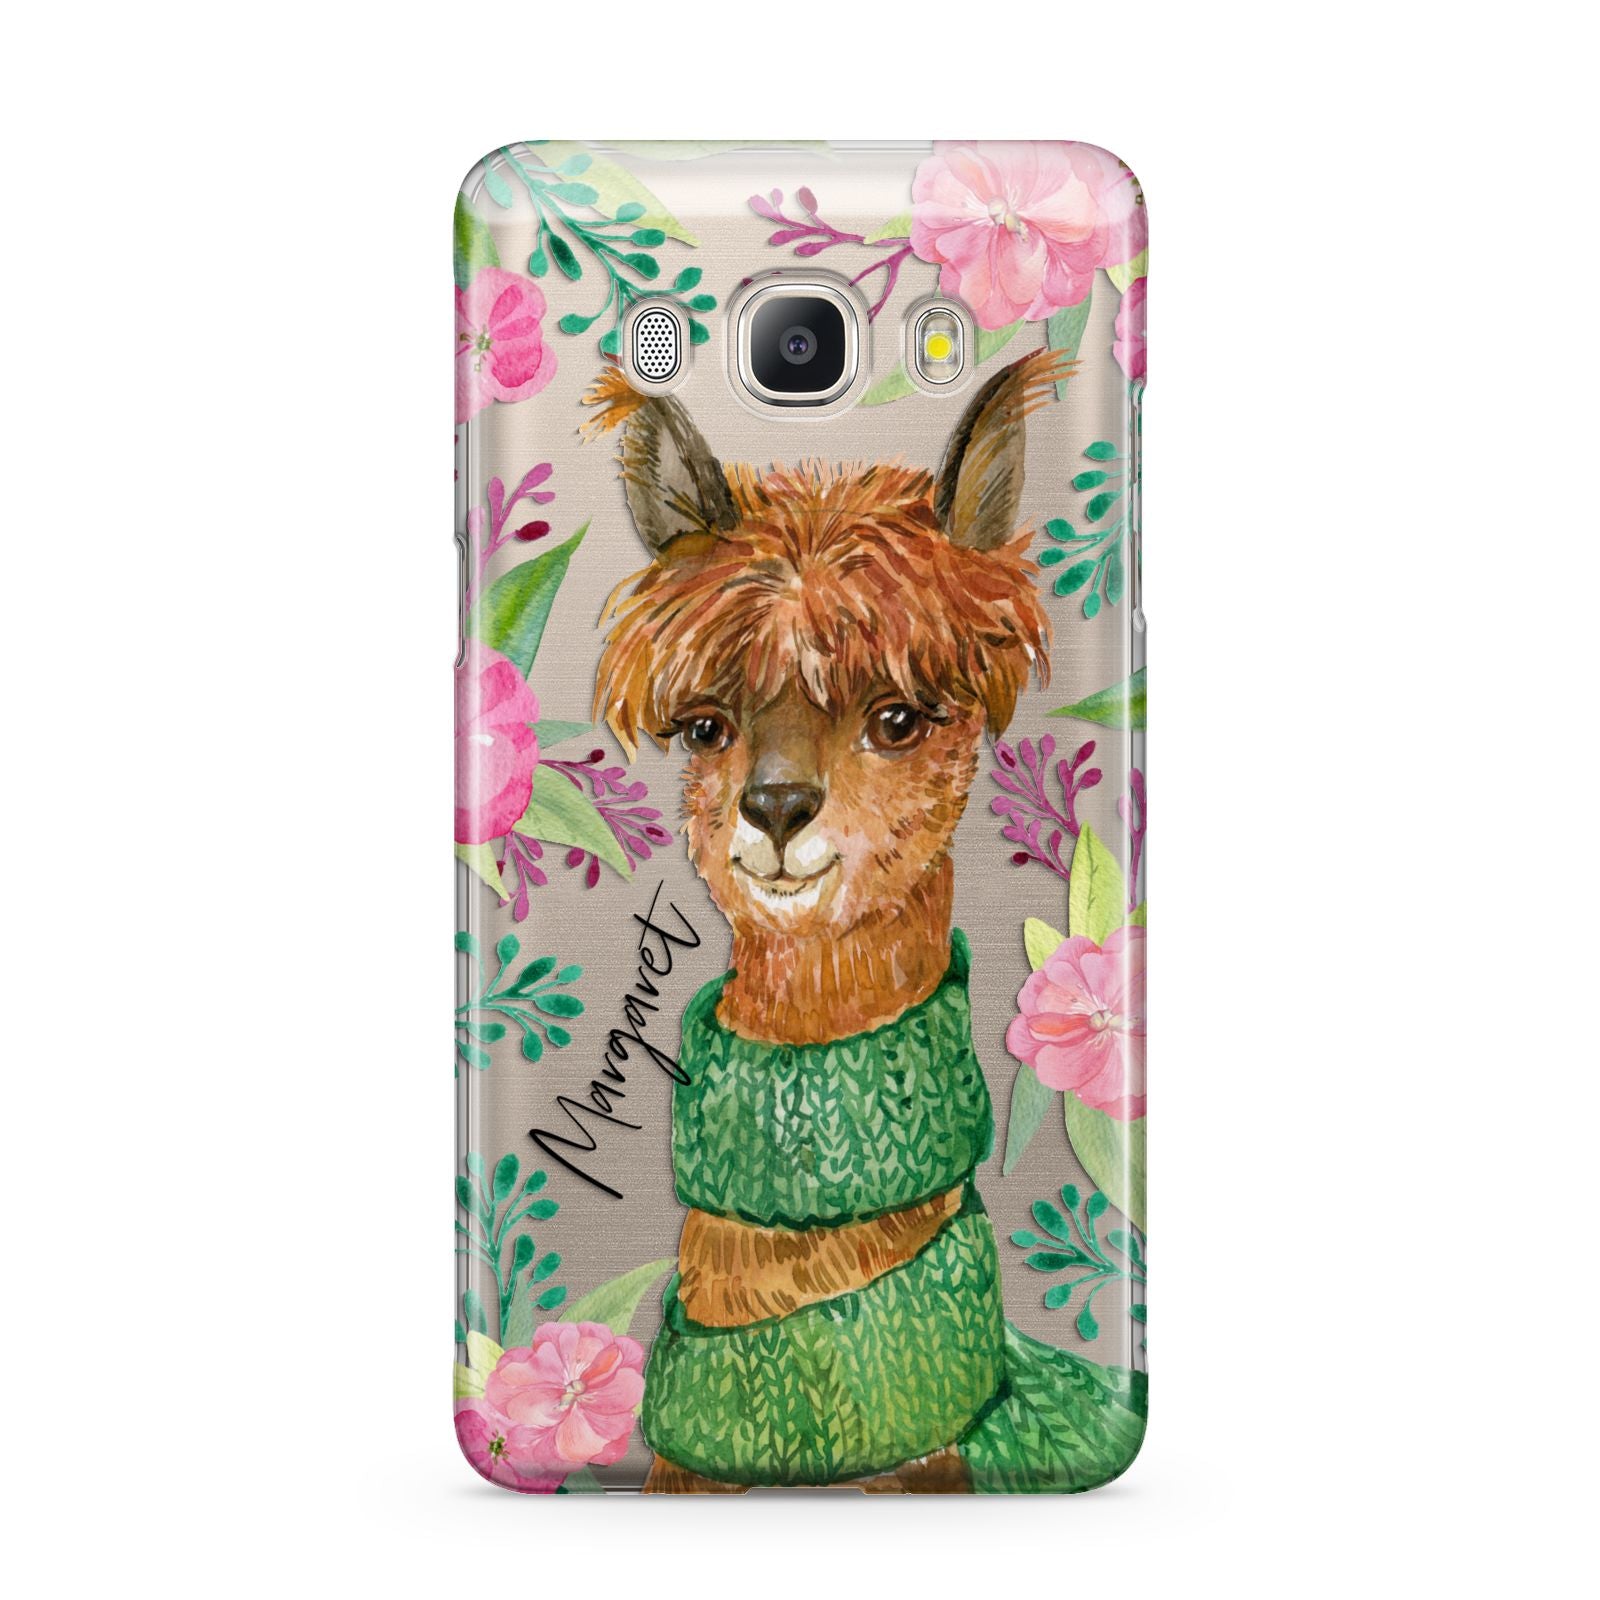 Personalised Alpaca Samsung Galaxy J5 2016 Case